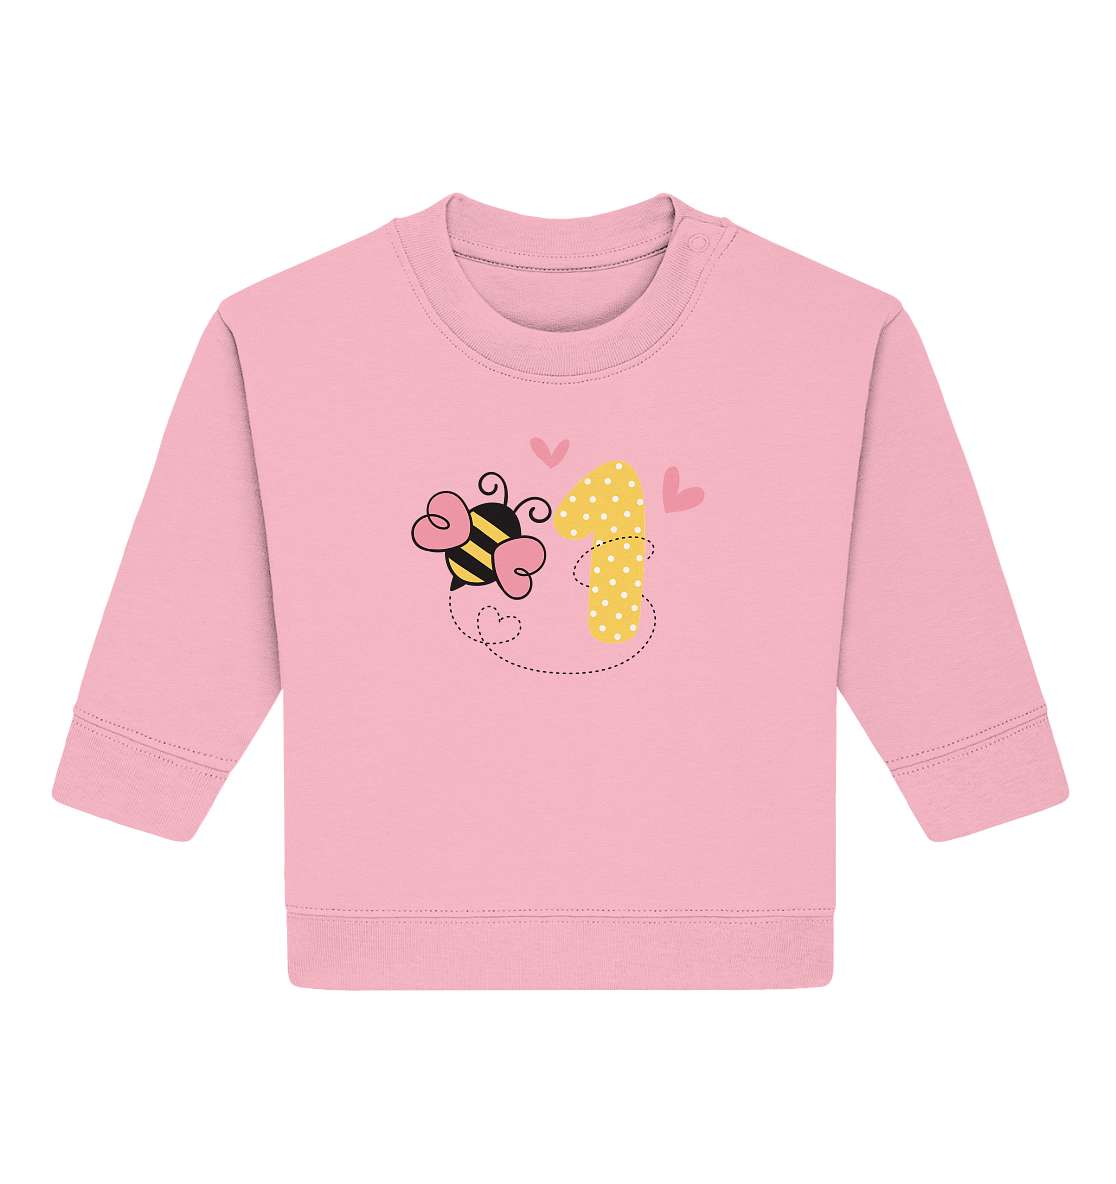 Baby erster Geburtstag - Geburtstags Geschenk - Baby Organic Sweatshirt